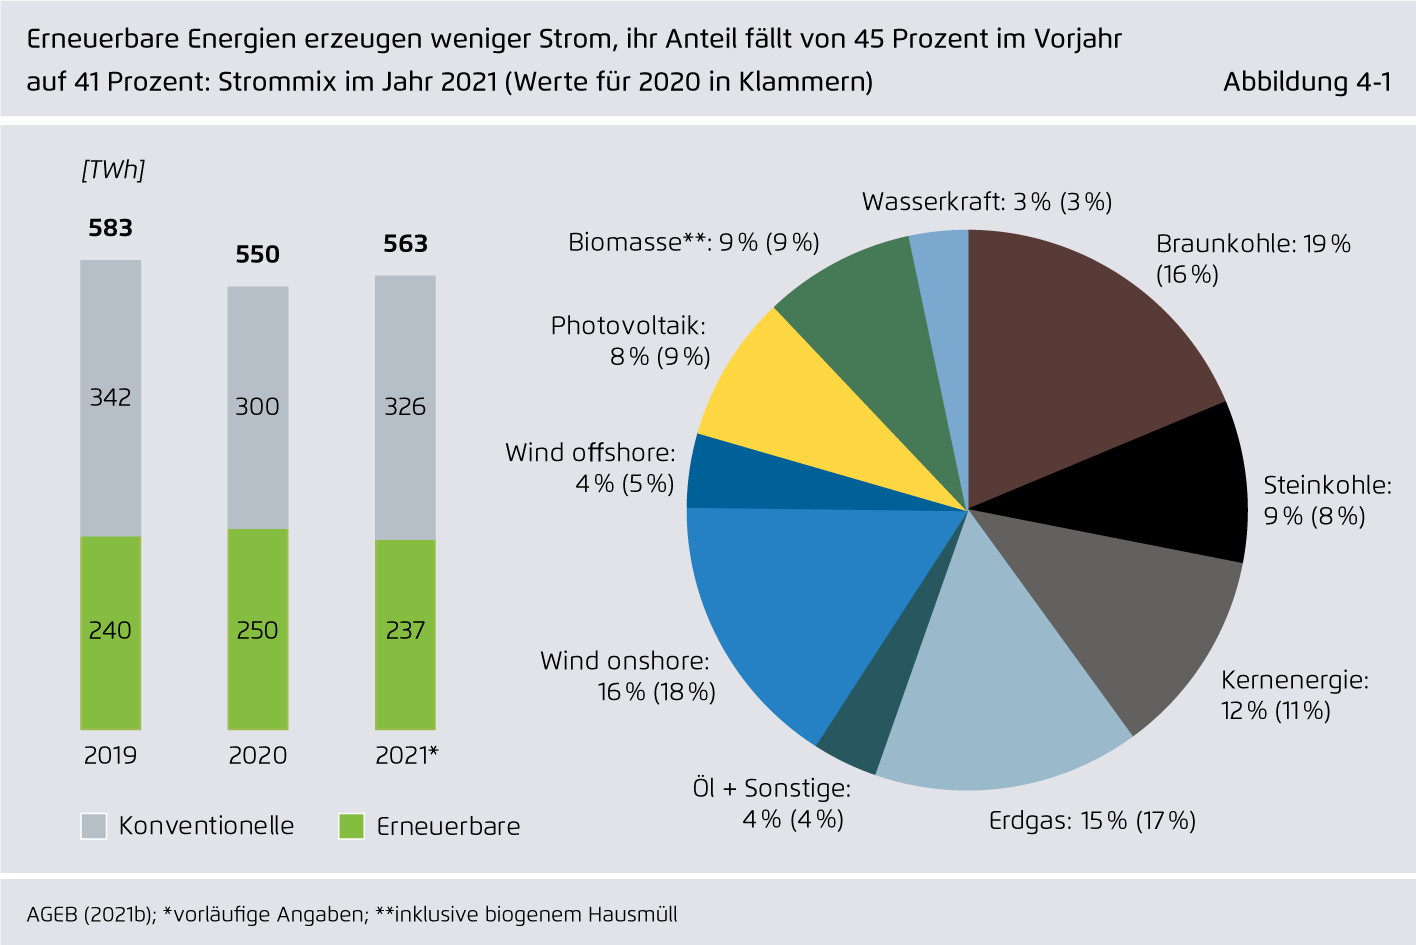 Preview for Erneuerbare Energien erzeugen weniger Strom, ihr Anteil fällt von 45 Prozent im Vorjahr auf 41 Prozent: Strommix im Jahr 2021 (Werte für 2020 in Klammern)